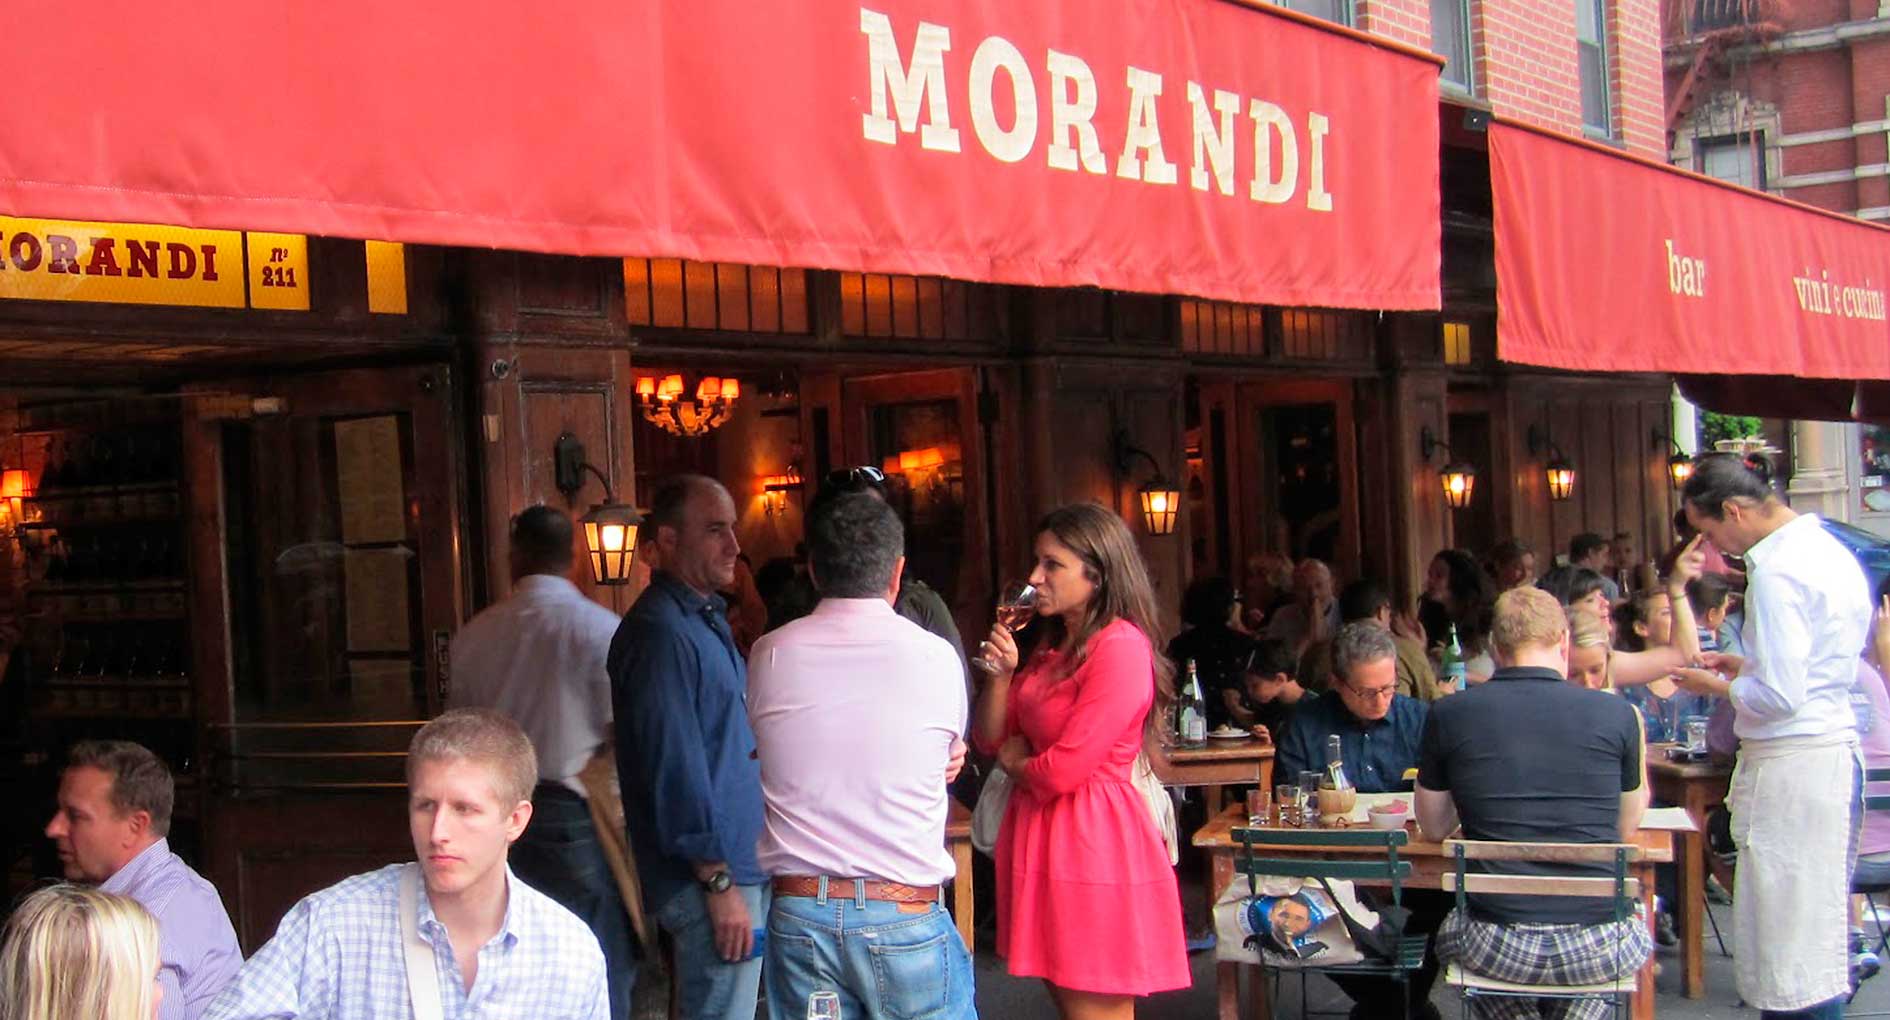 Morandi Restaurent Exterior